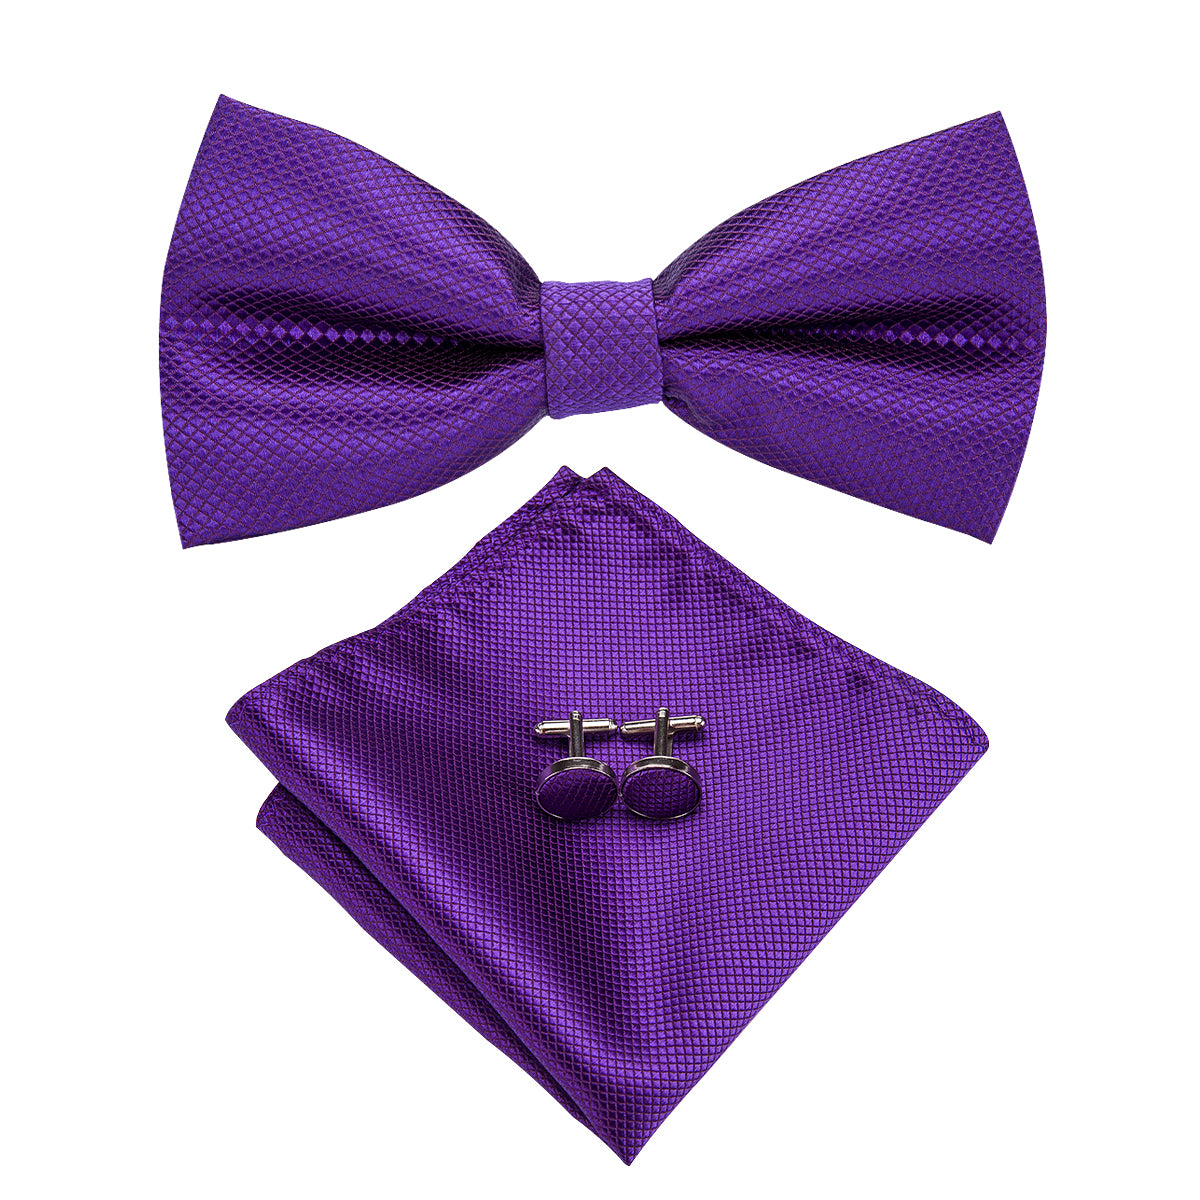 Solid Purple Pre-tied Bow Tie Hanky Cufflinks Set